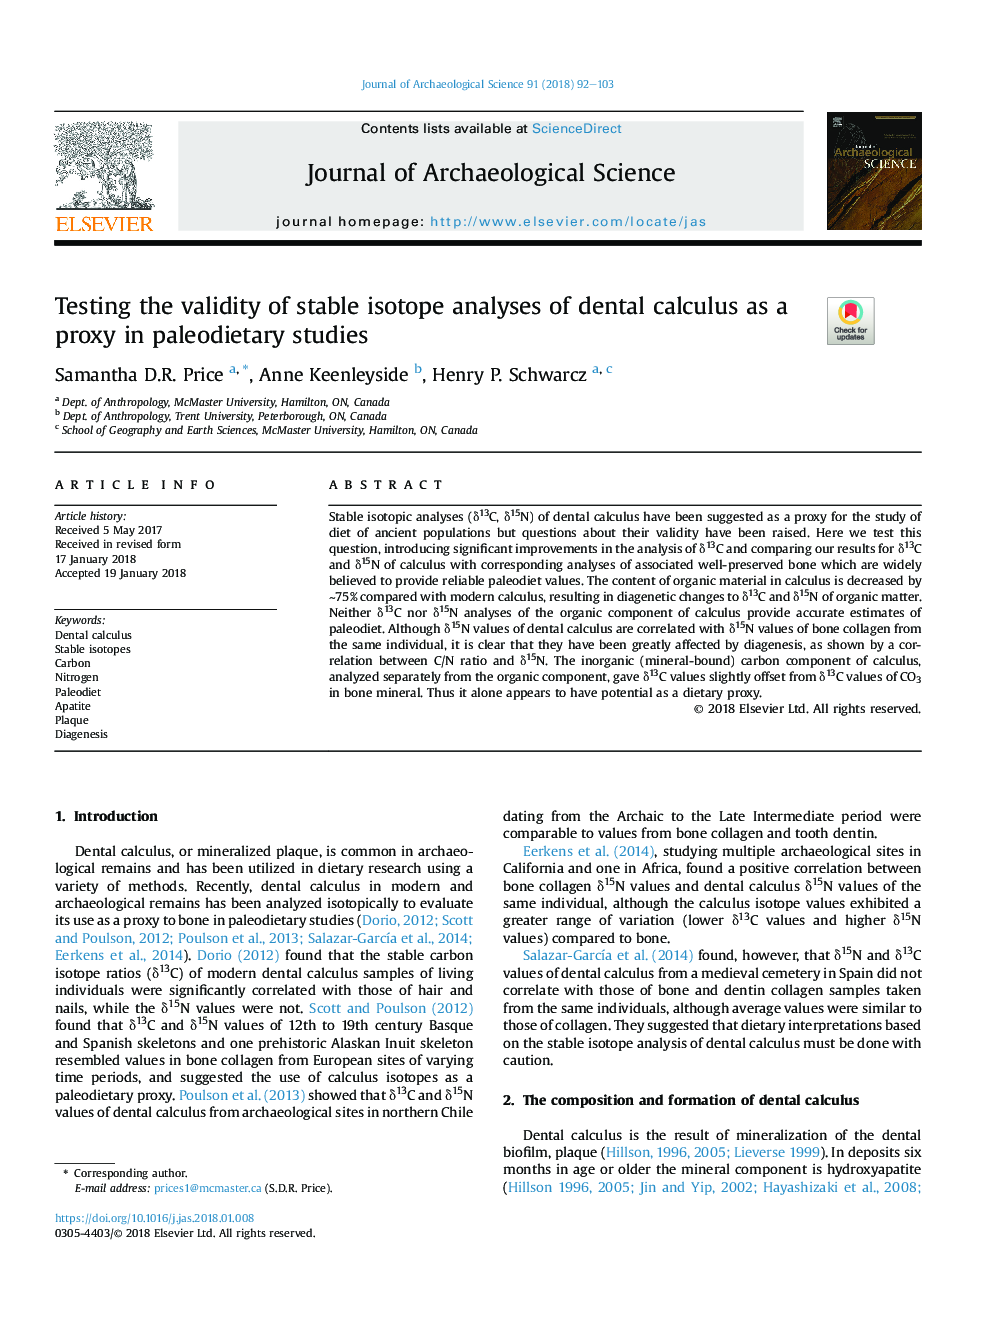 تست روایی تجزیه و تحلیل ایزوتوپ پایدار از محاسبات دندان به عنوان یک پروکسی در مطالعات پالودیتیک 